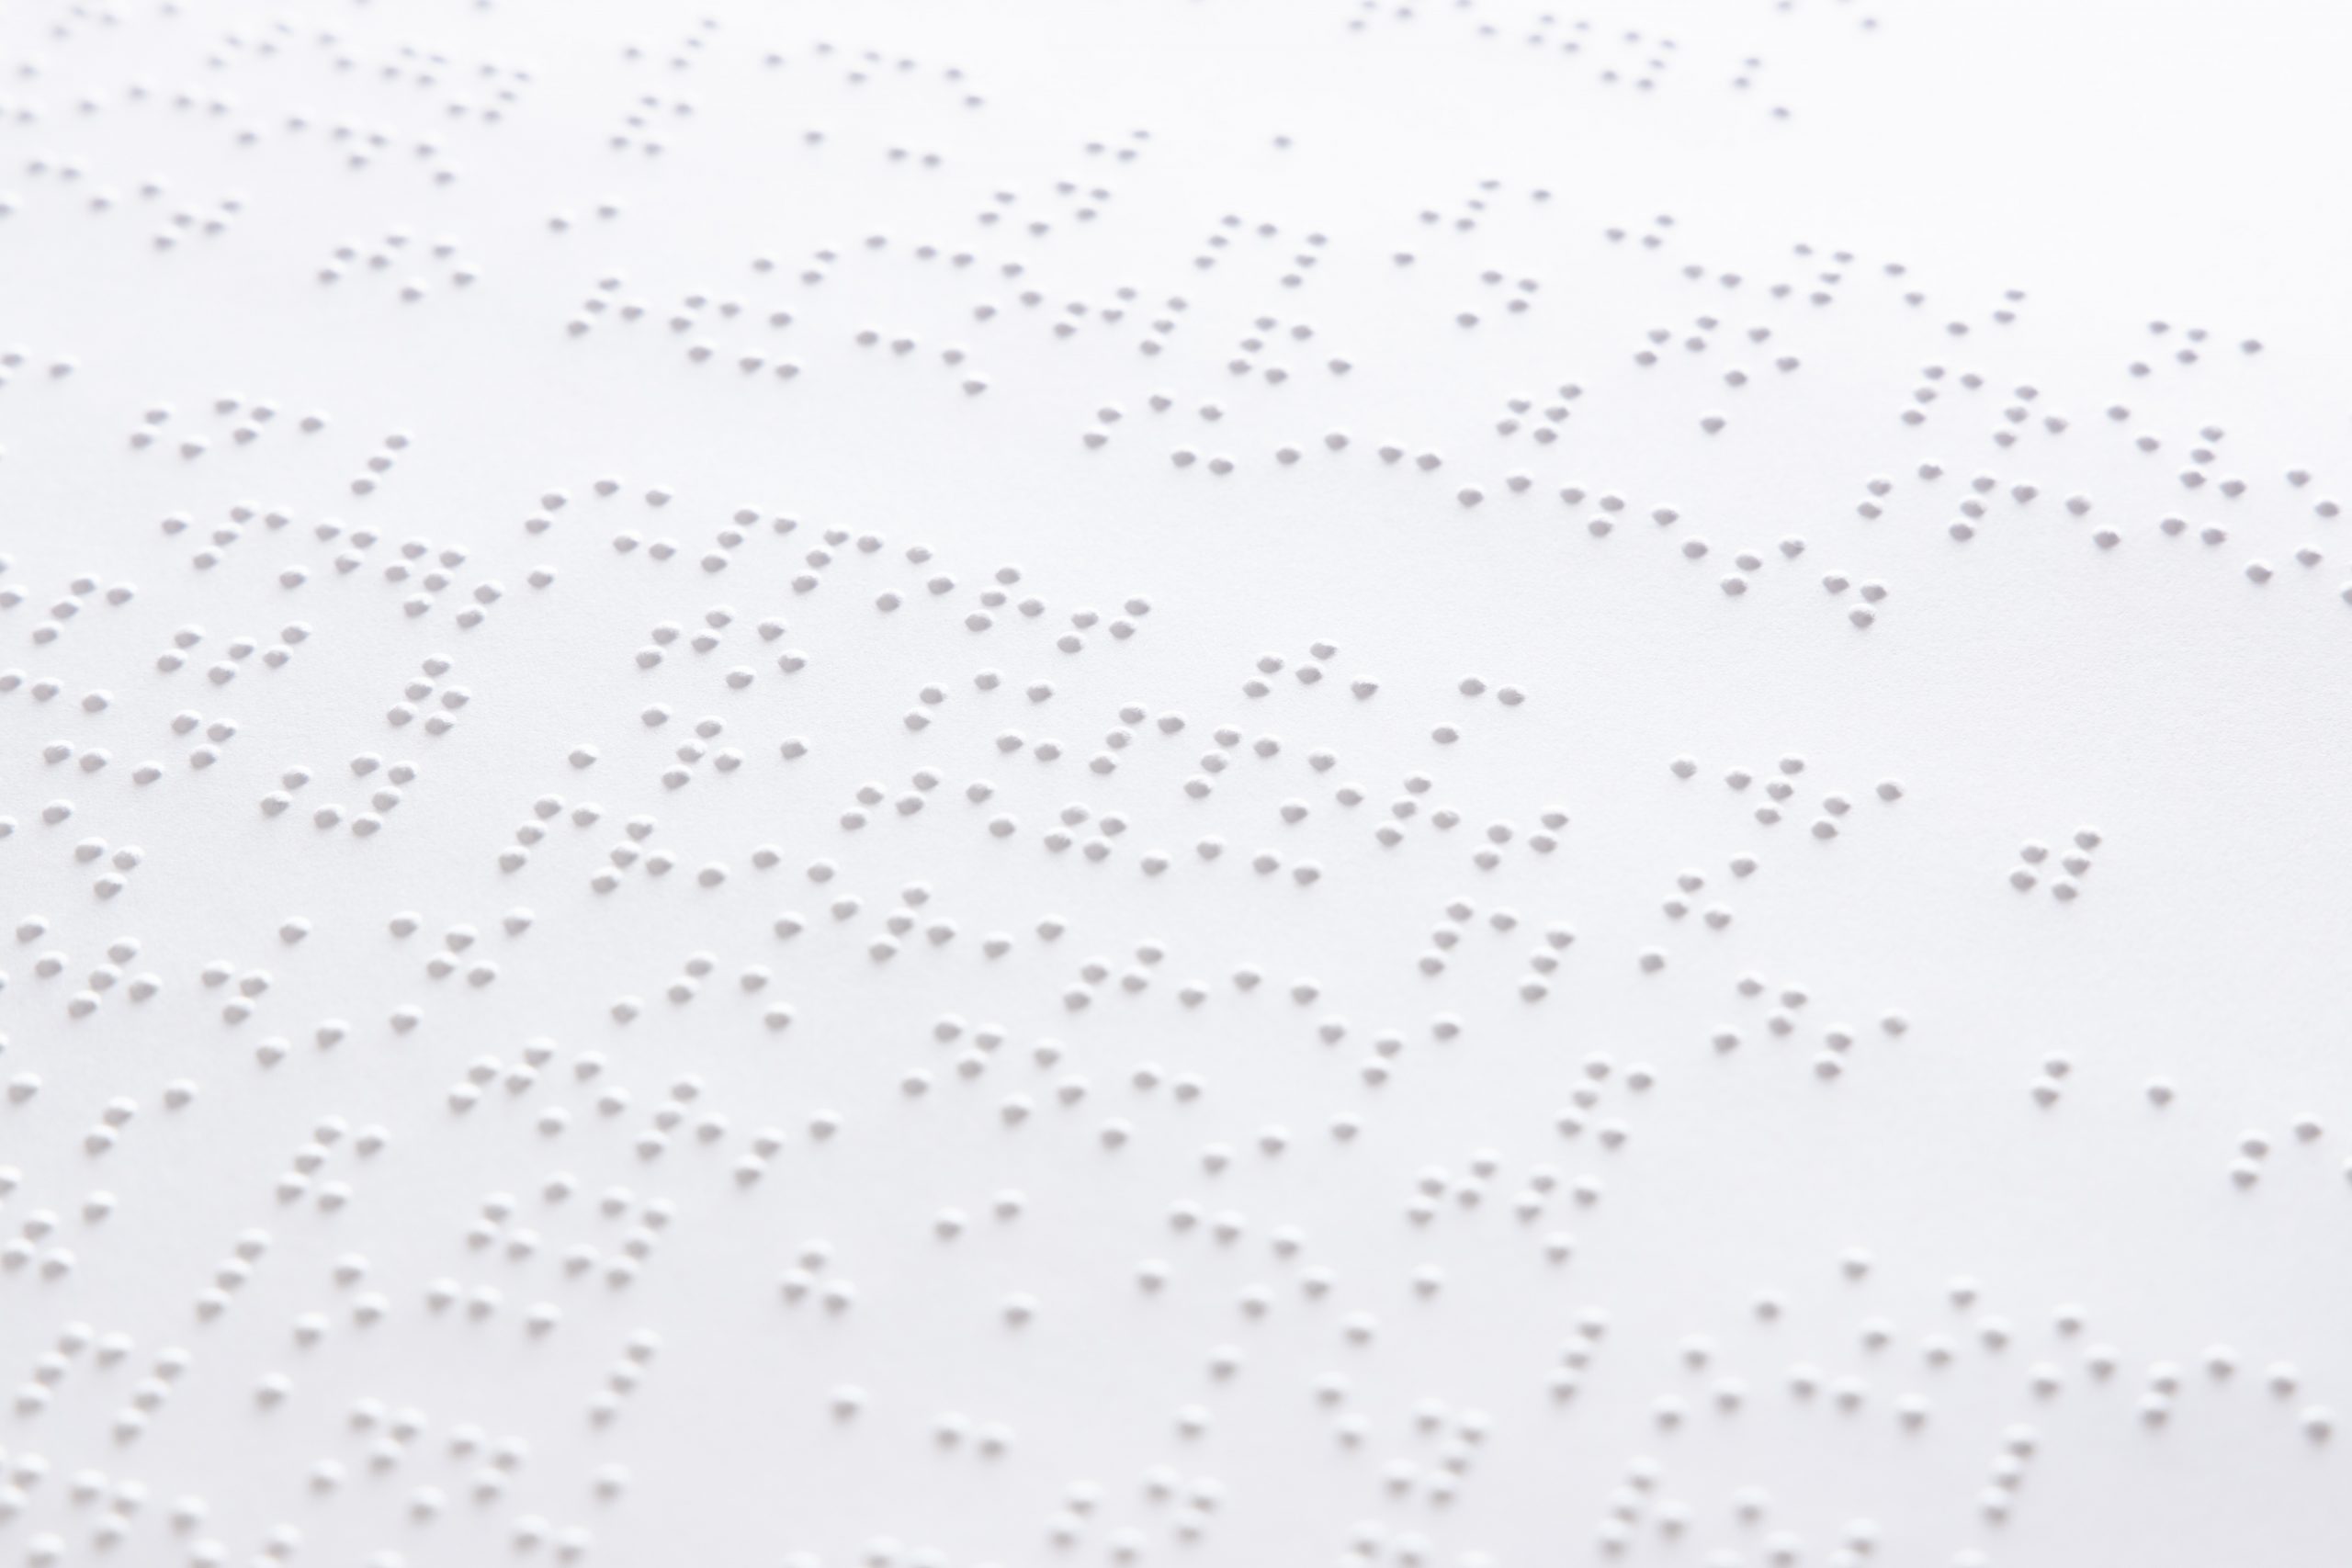 Braille document